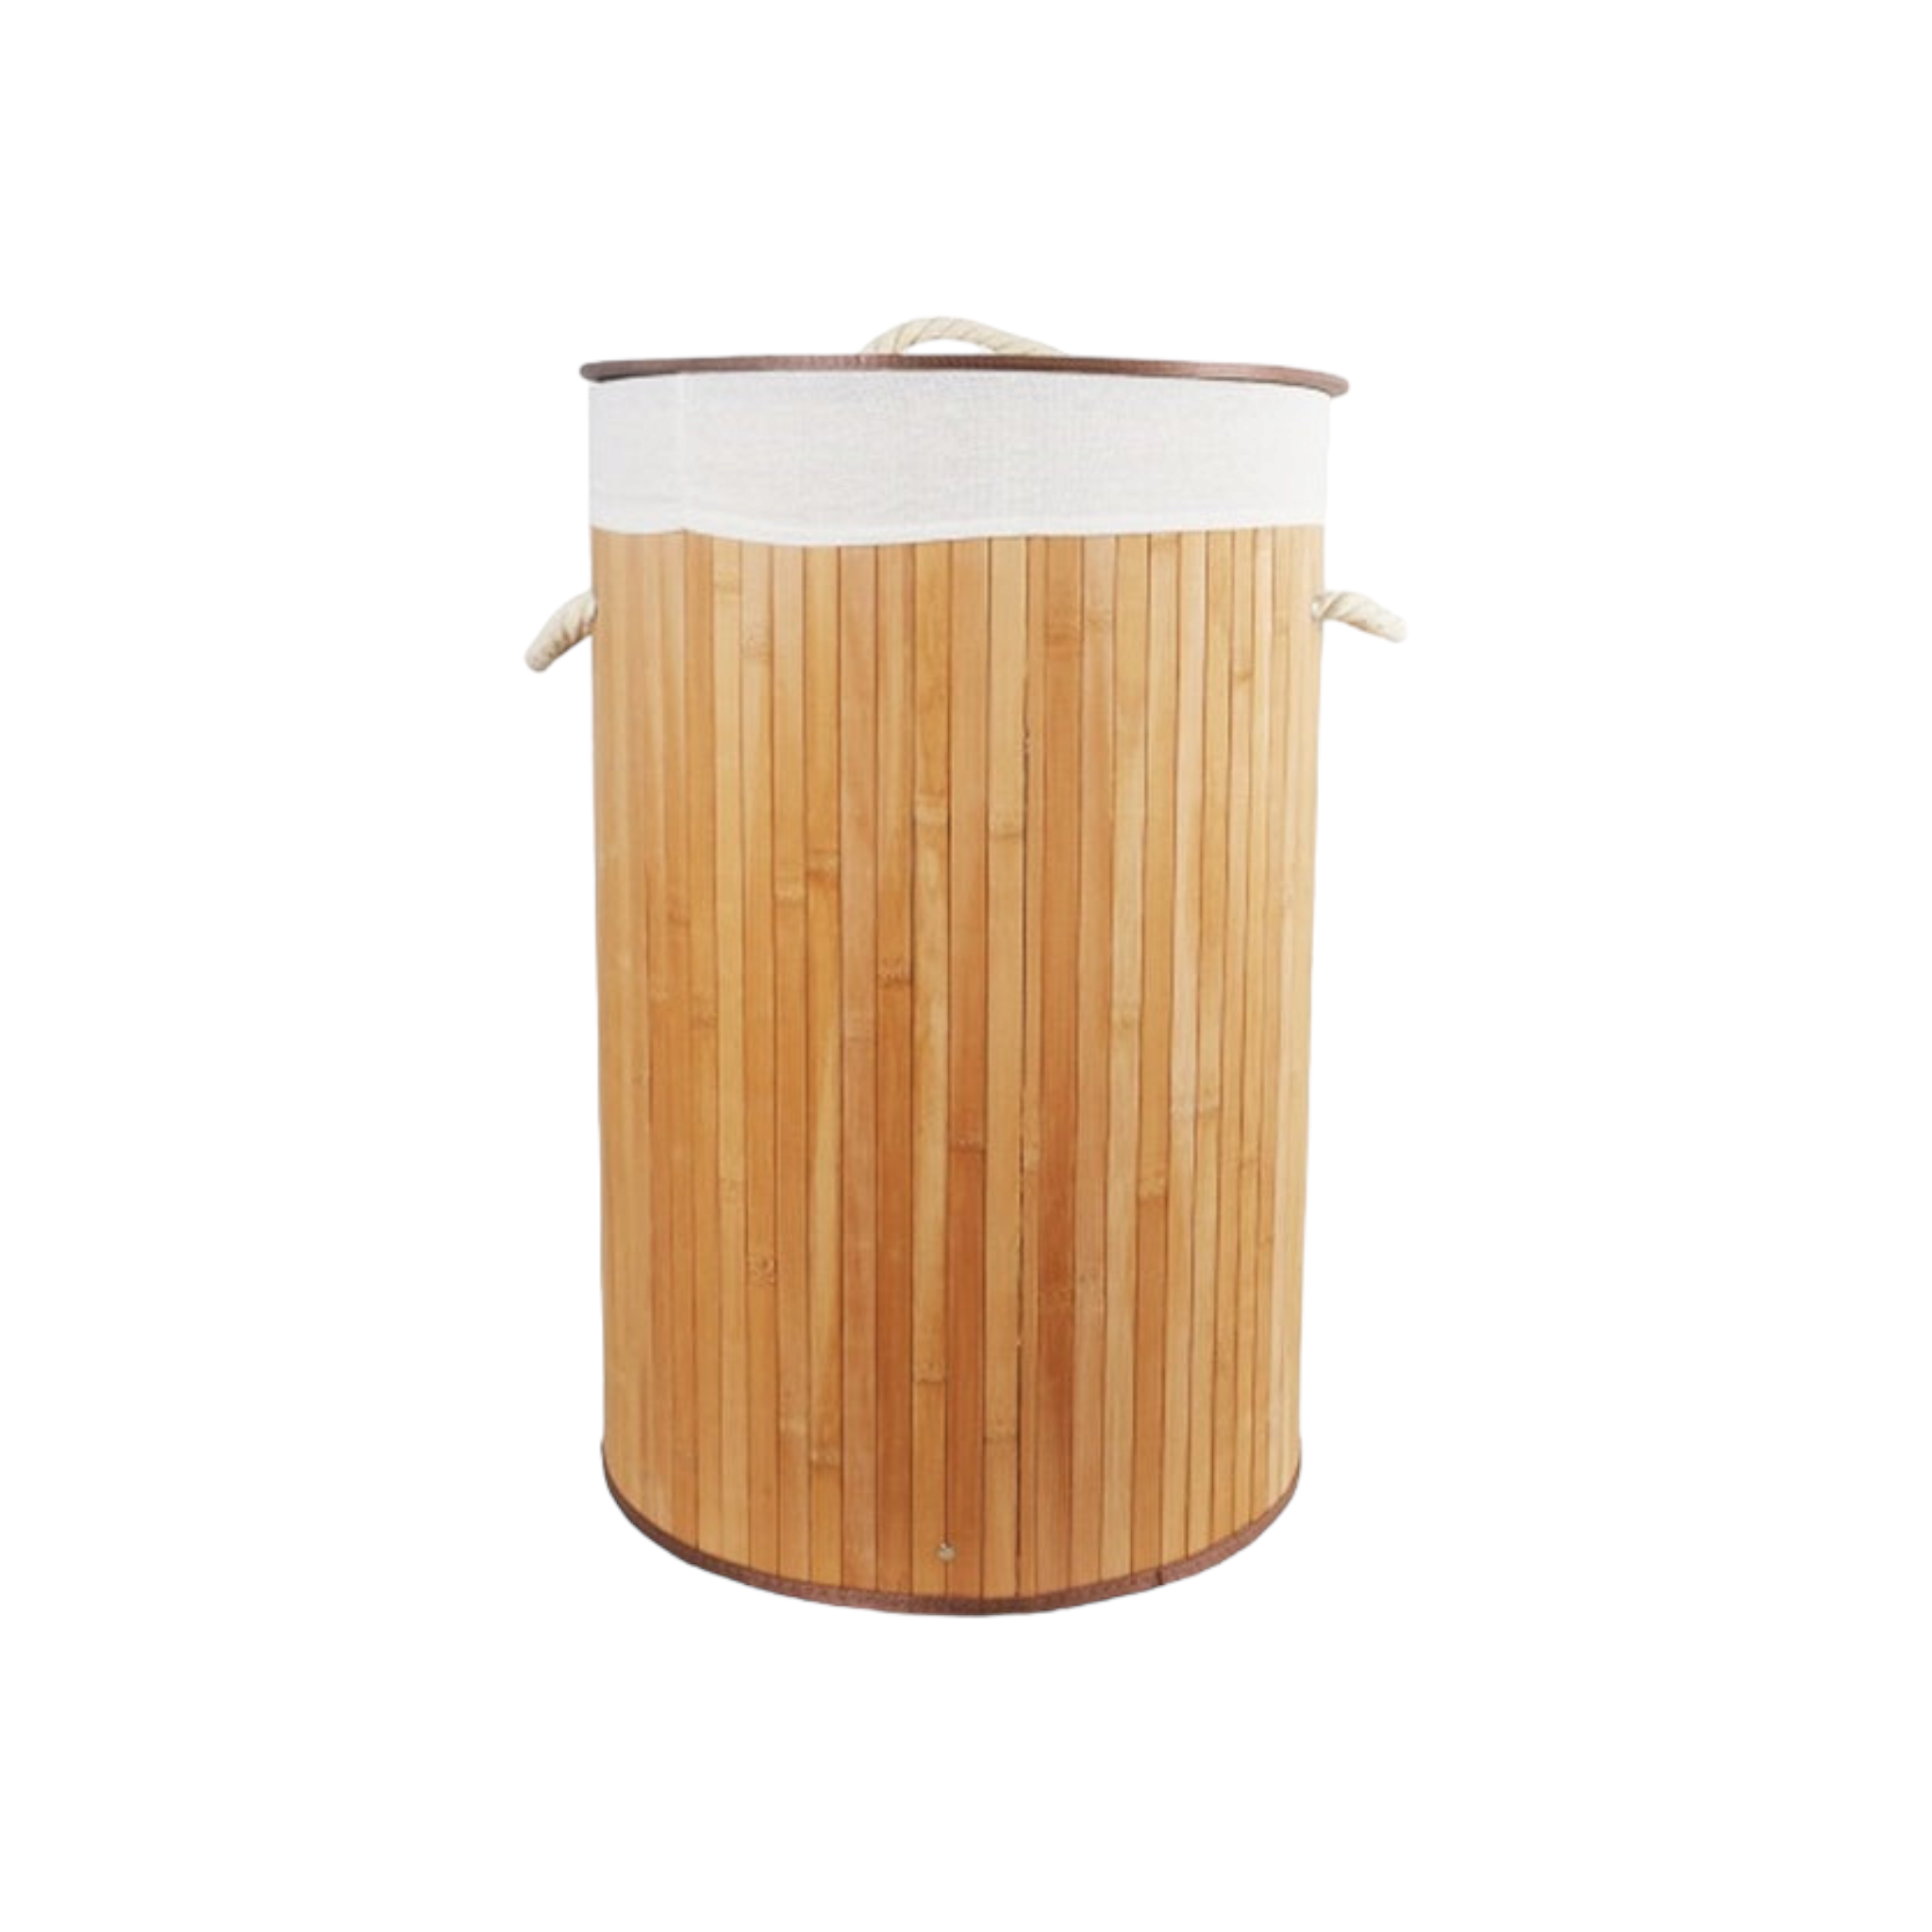 Aqua Bamboo Foldable Laundry Basket Round Natural 15607